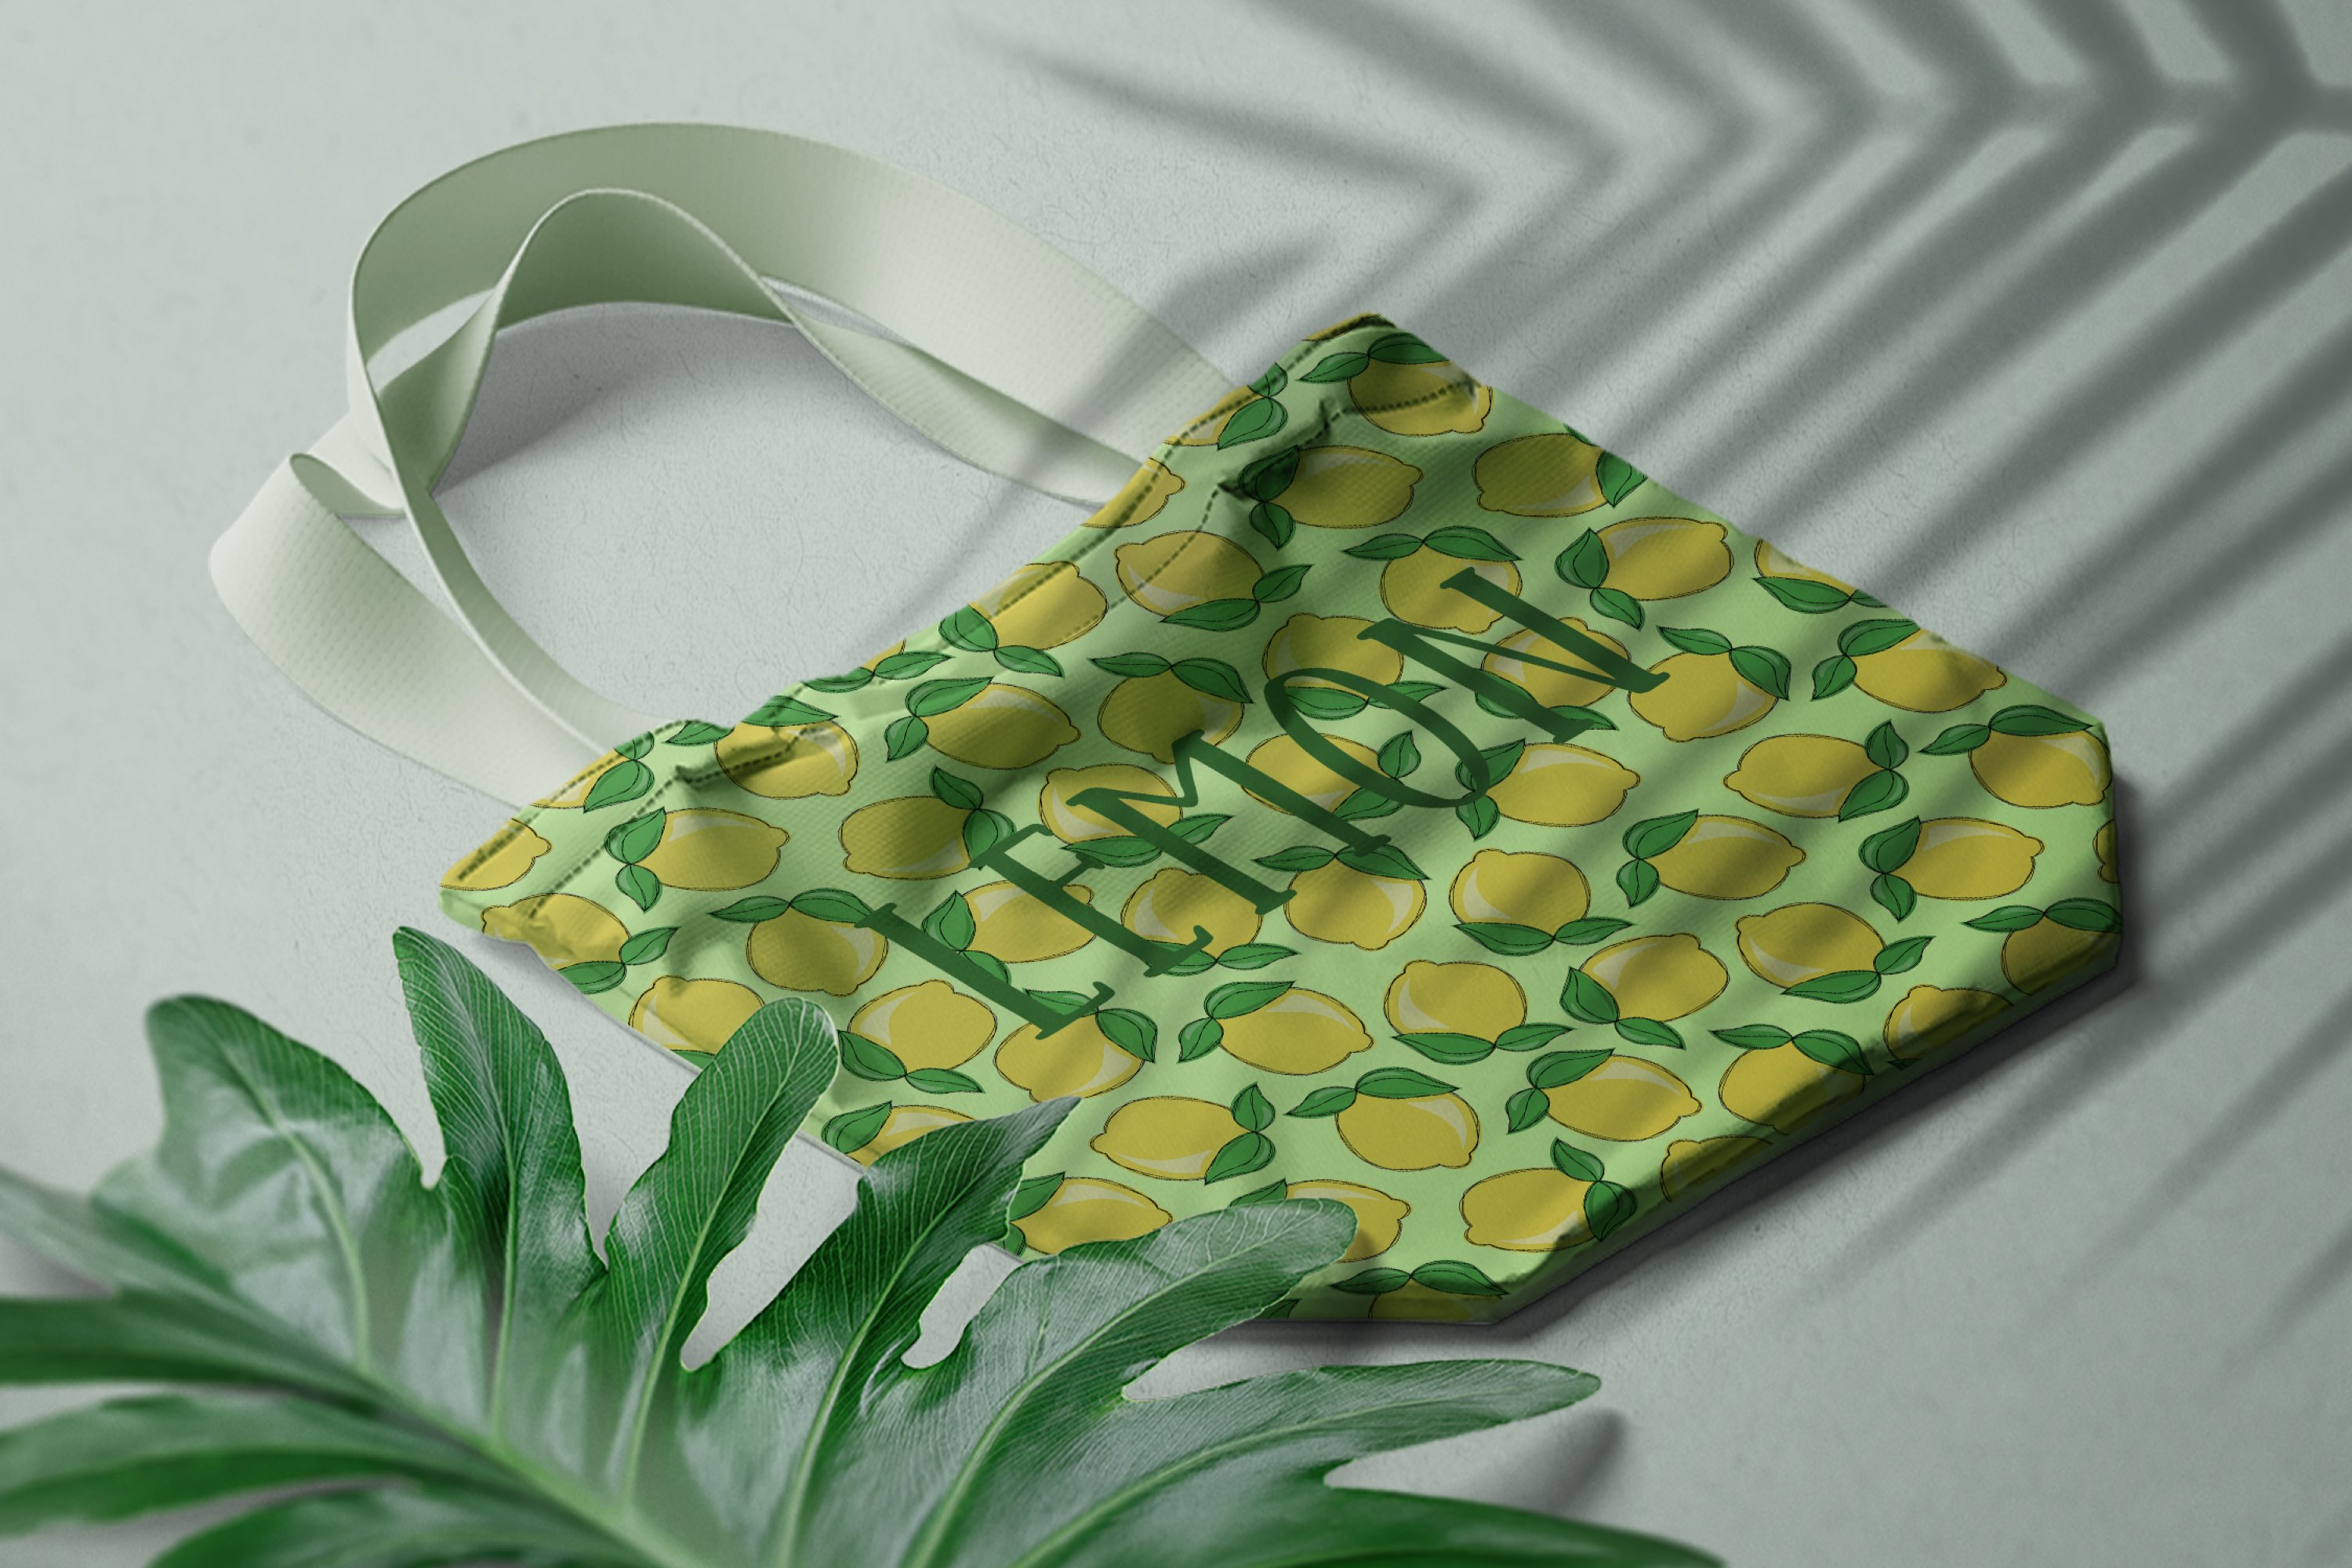 Green eco bag with lemon.